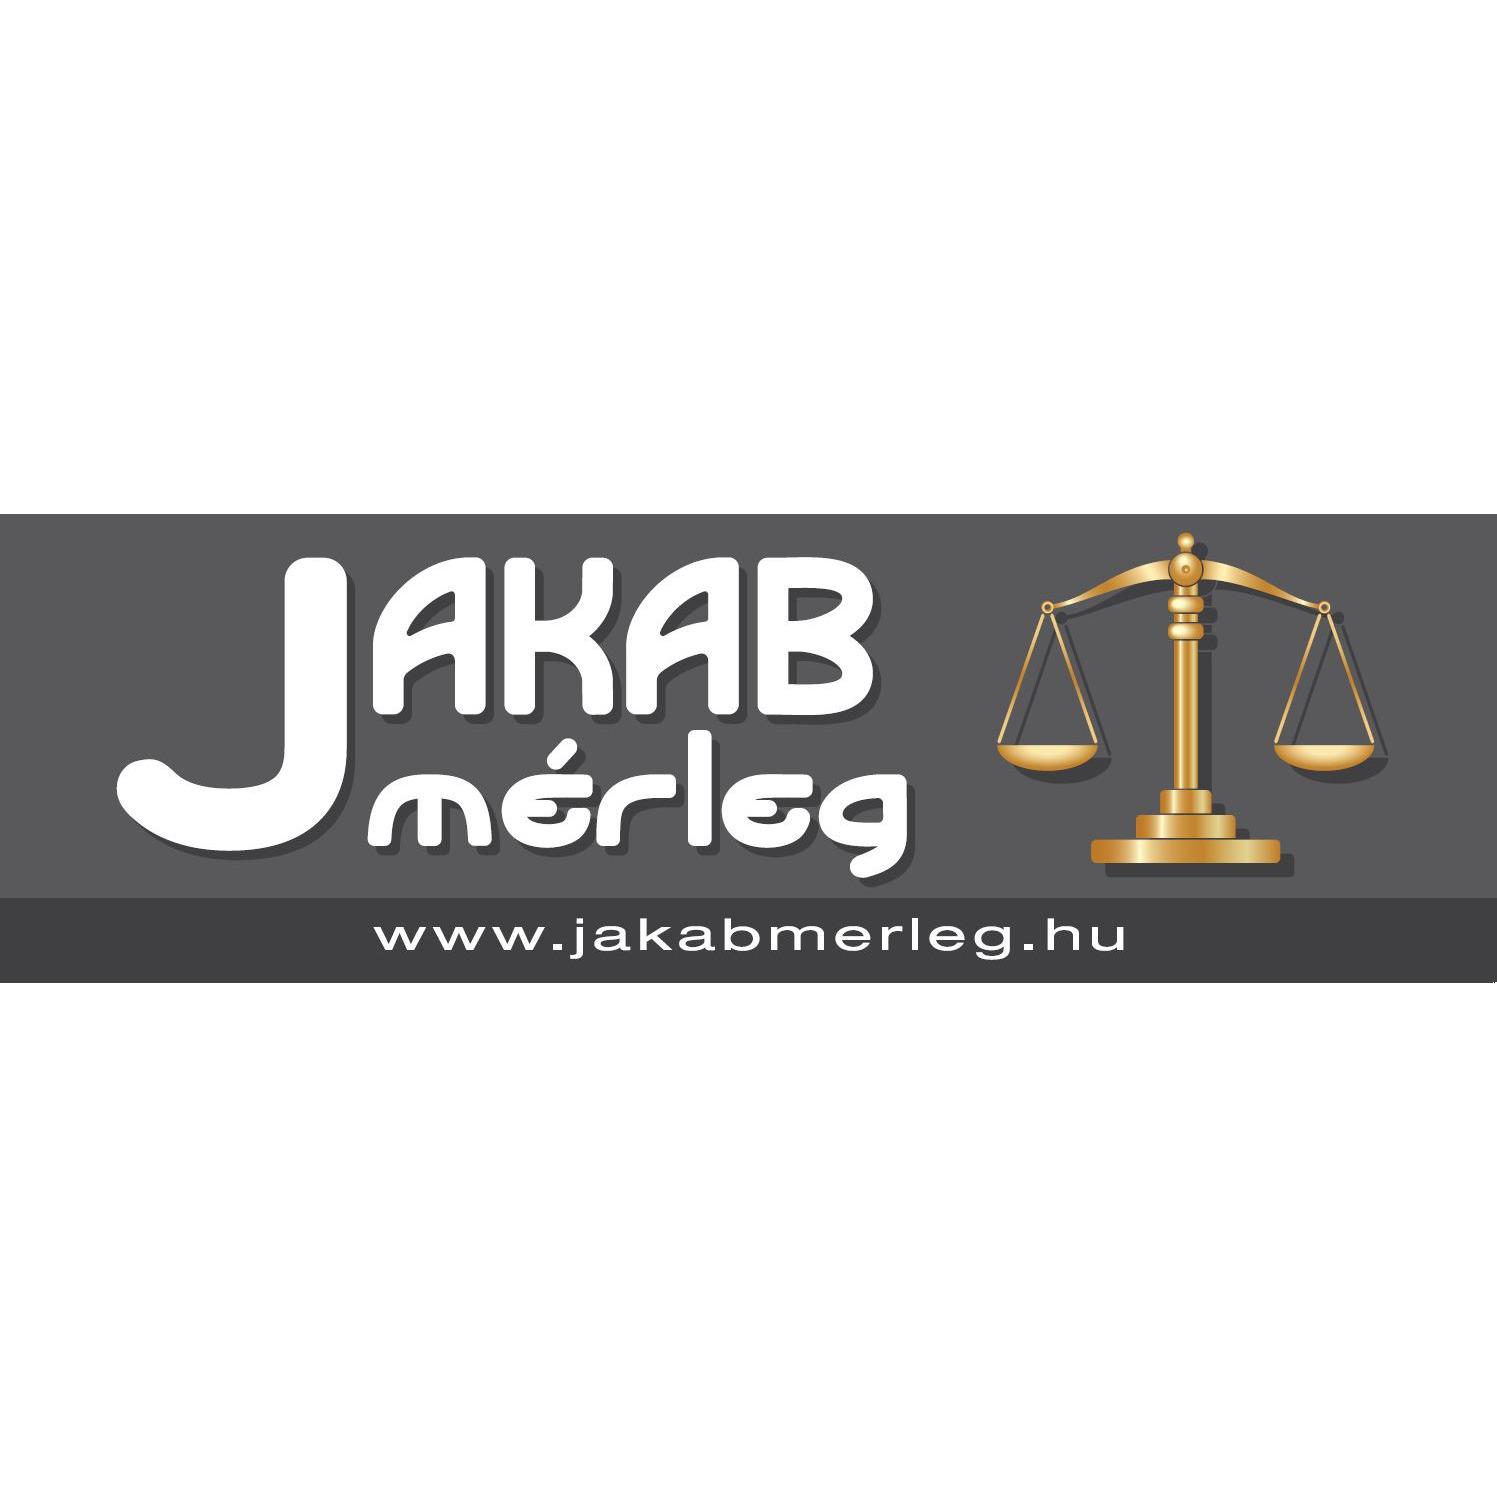 Jakab Mérleg - Jakab János mérlegkészítő, forgalmazó Logo